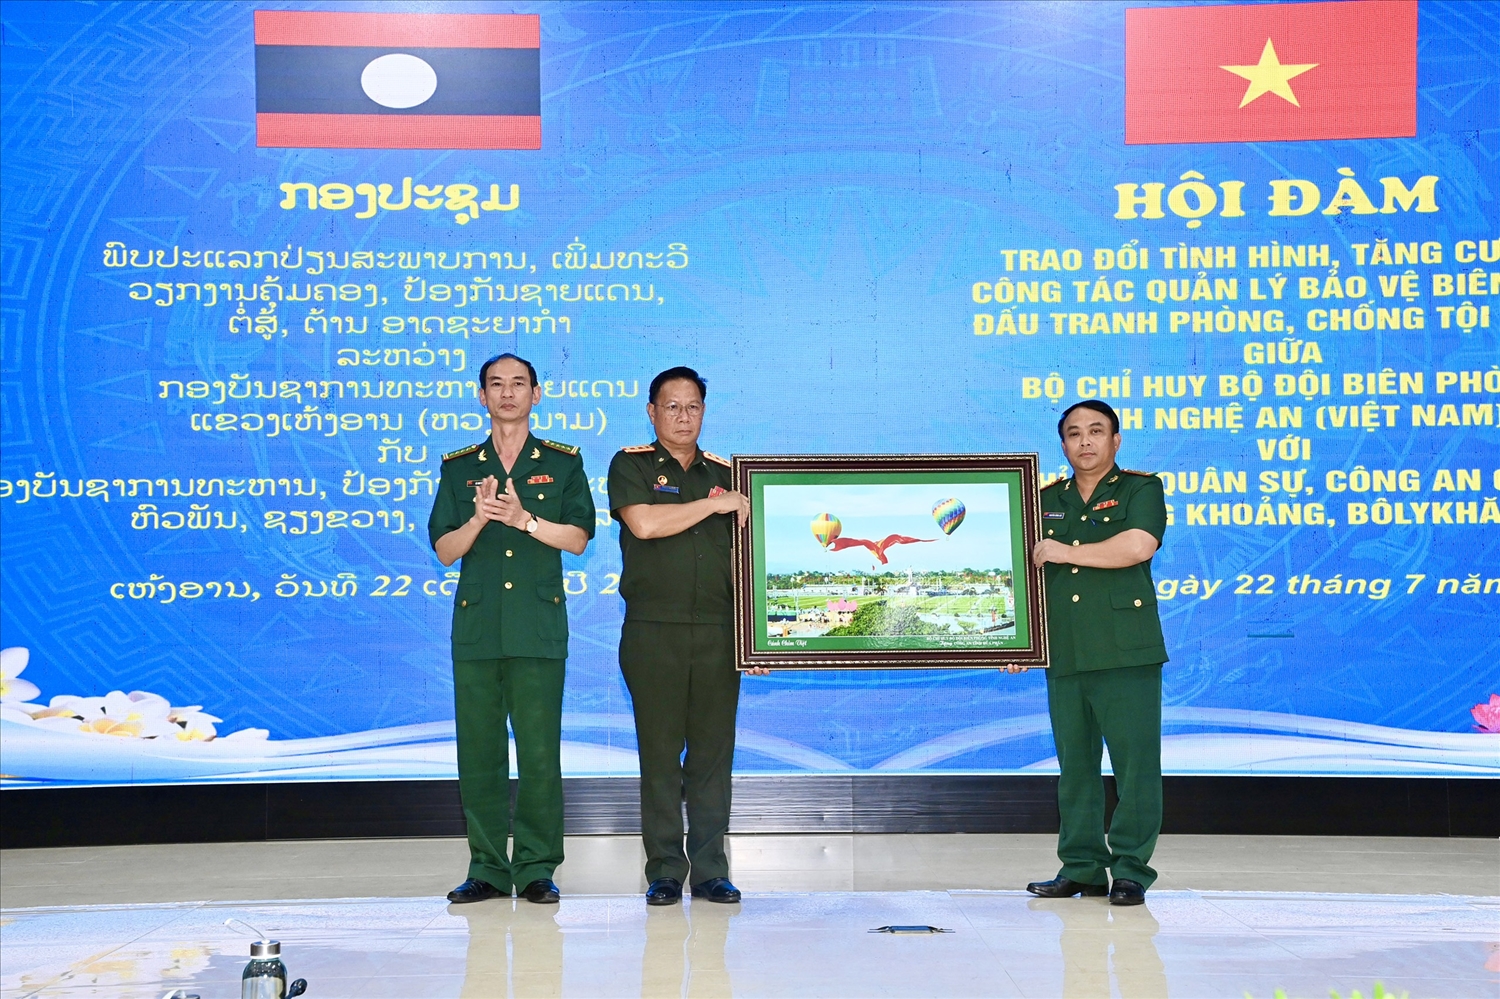 Bộ Chỉ huy BĐBP Nghệ An tặng quà lưu niệm Bộ Chỉ huy Quân sự tỉnh Hủa Phăn (Lào) tại Hội đàm công tác quản lý bảo vệ biên giới, đấu tranh phòng chống tội phạm